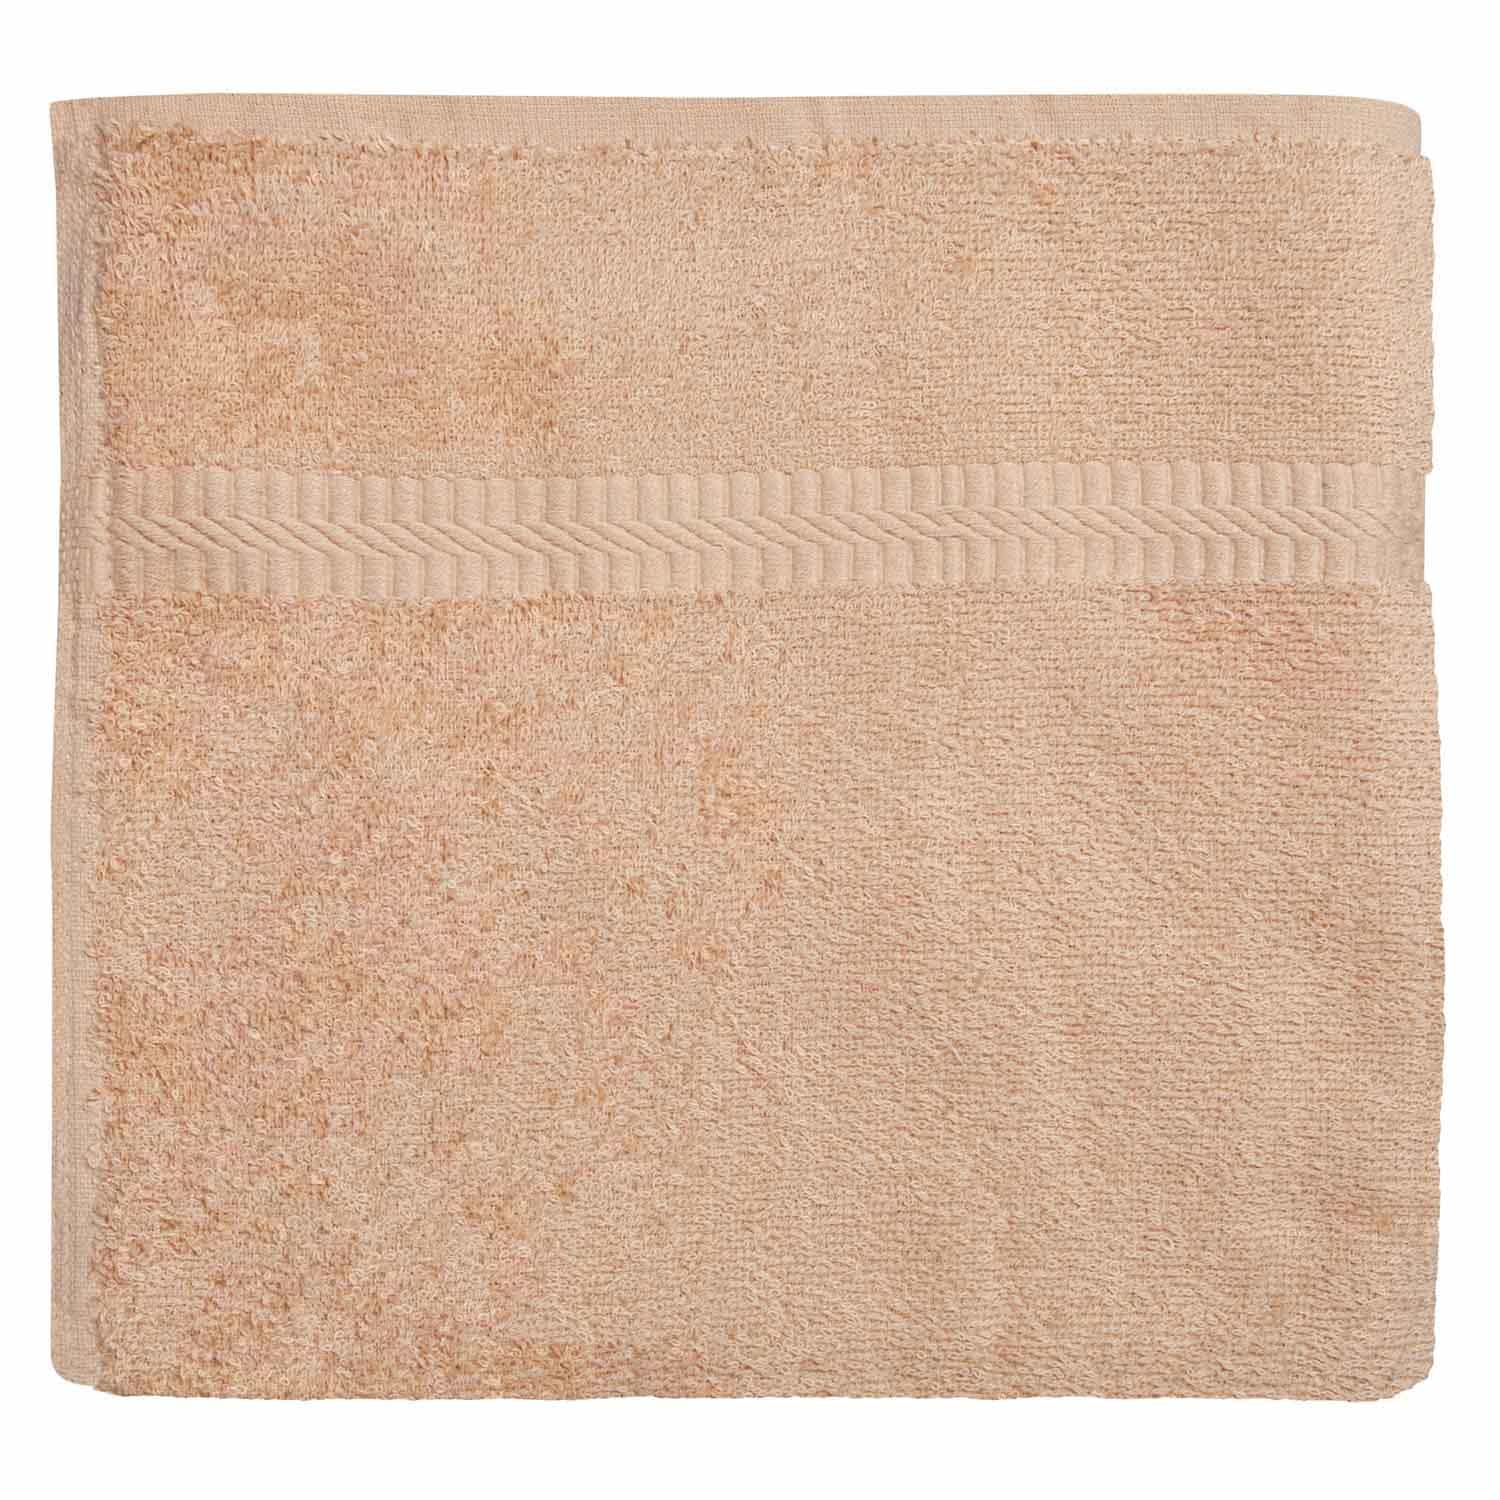 American Dawn | 27X54 Inch Beige With Dobby Border Hotel Towel | Bath Towel